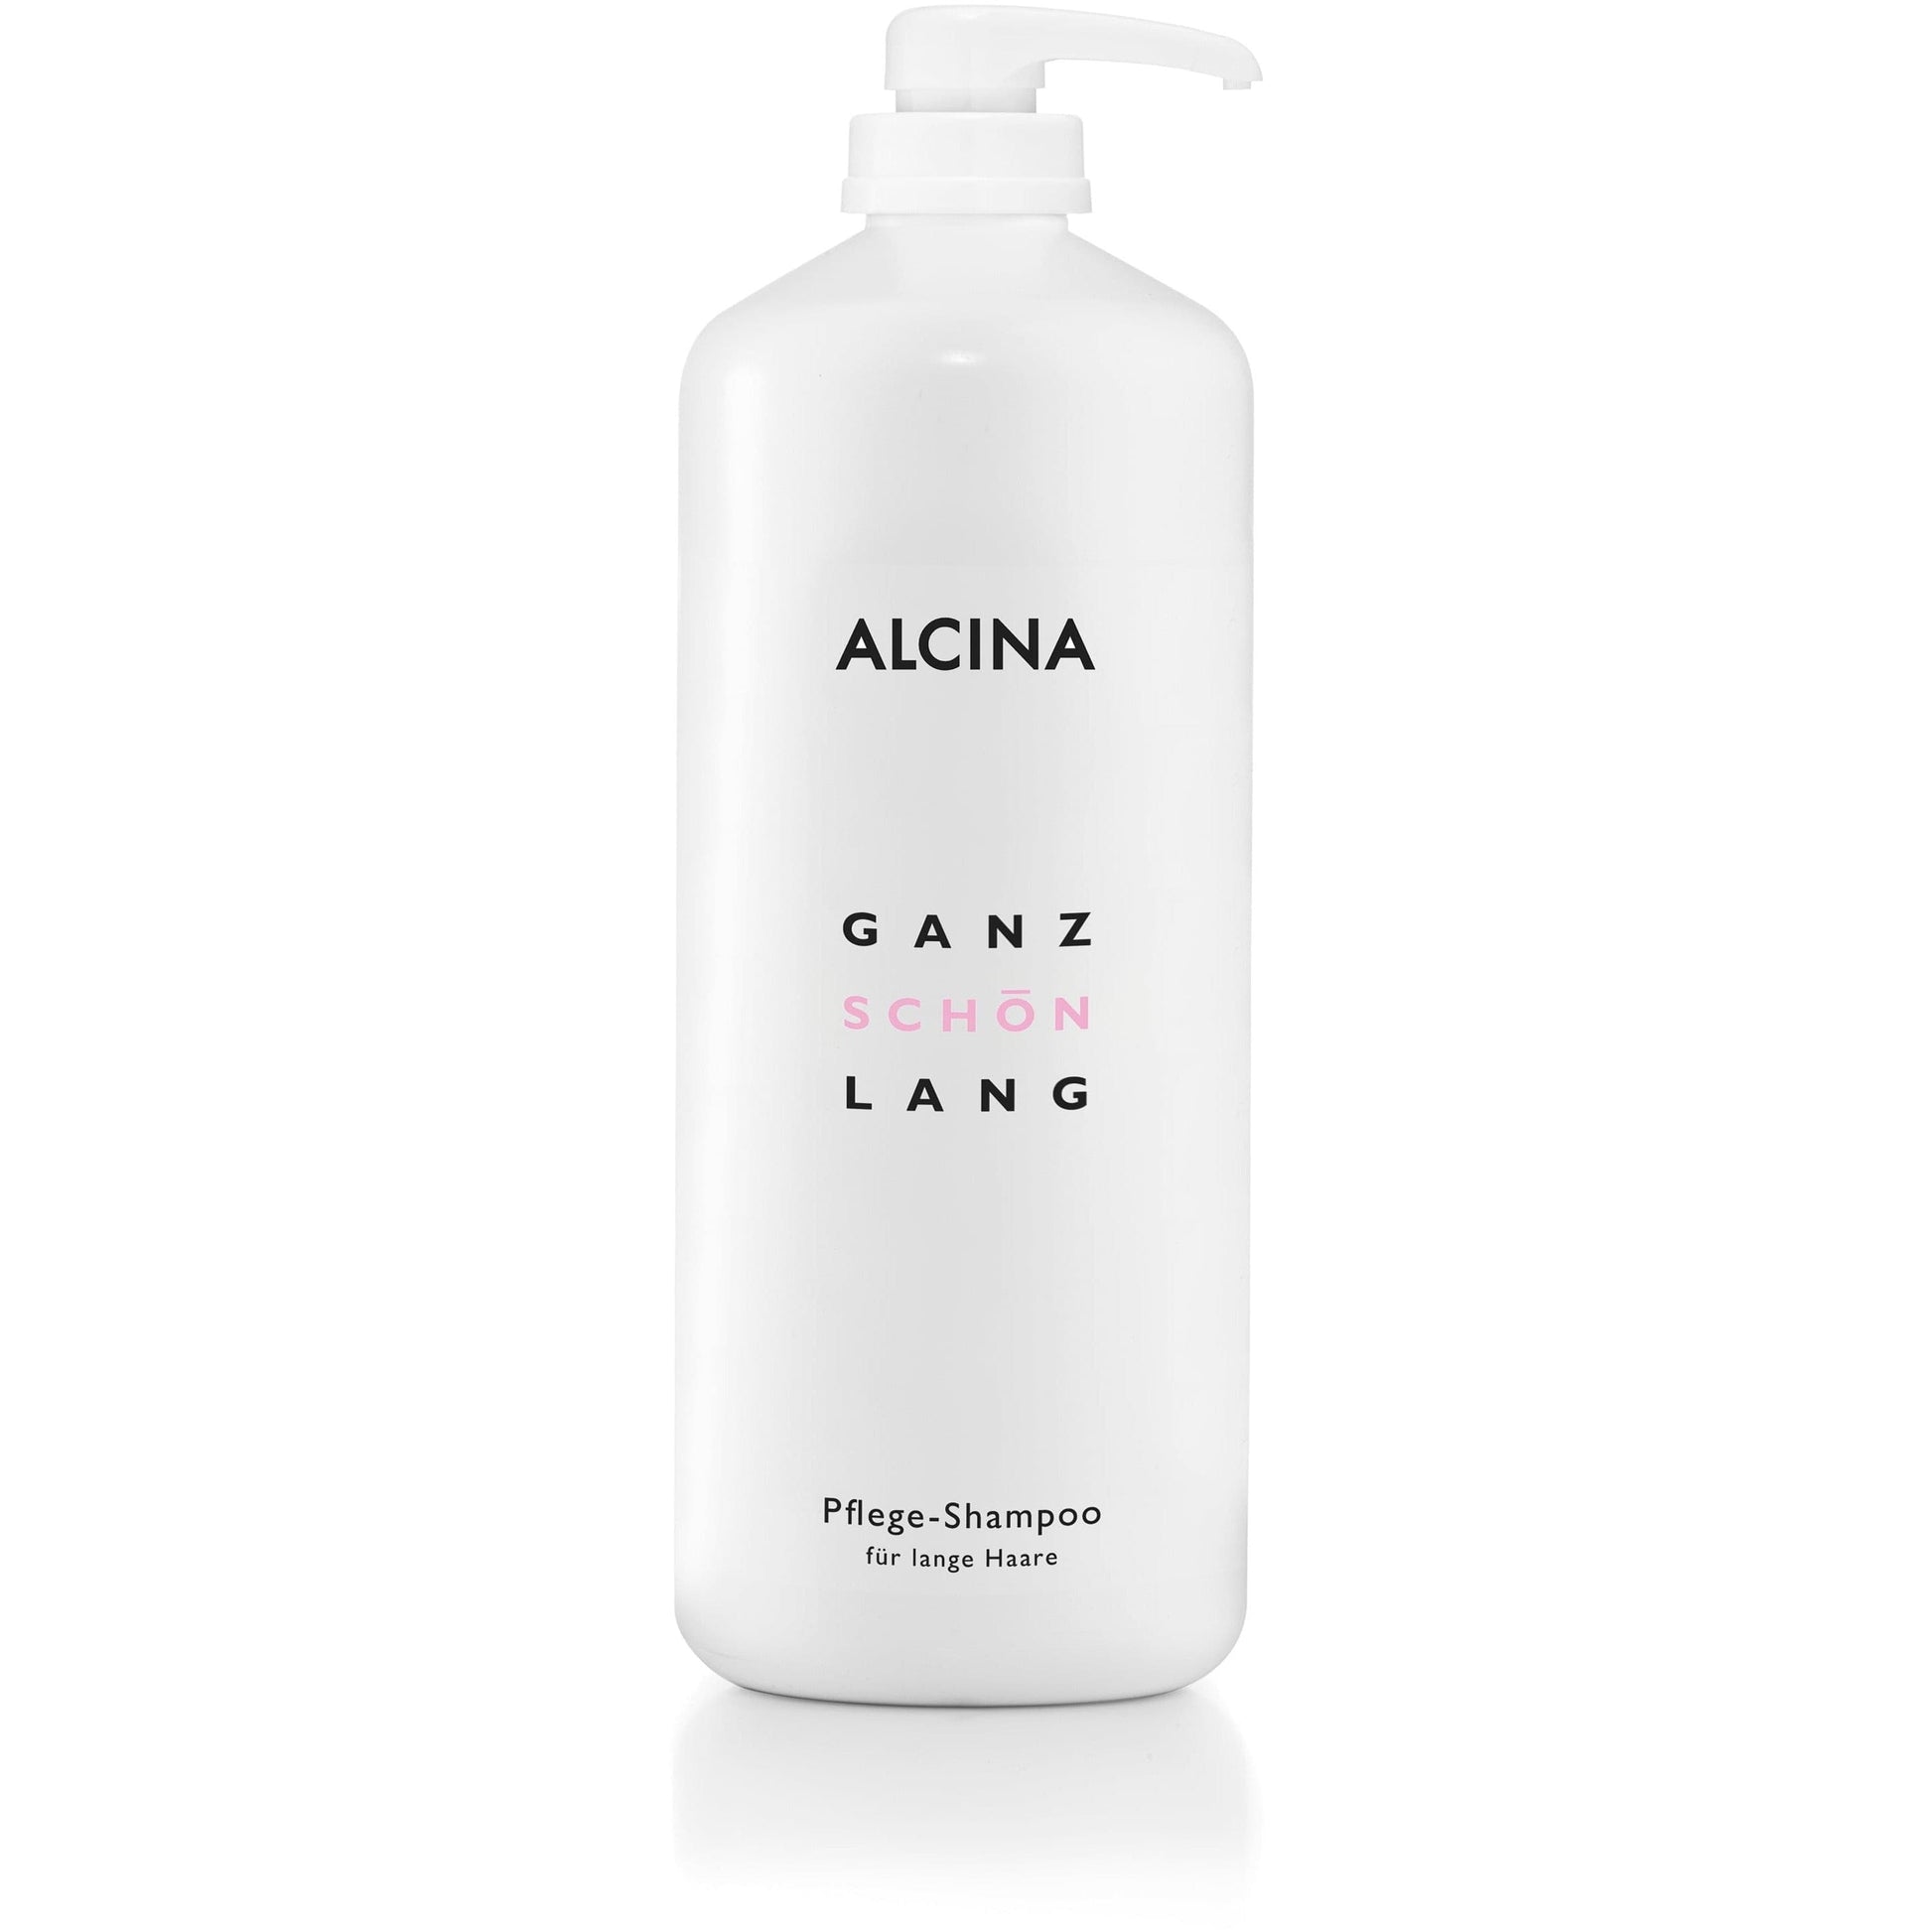 Alcina ganz schön lang Pflege Shampoo 1250ml | Frisör Schäfer Online Shop